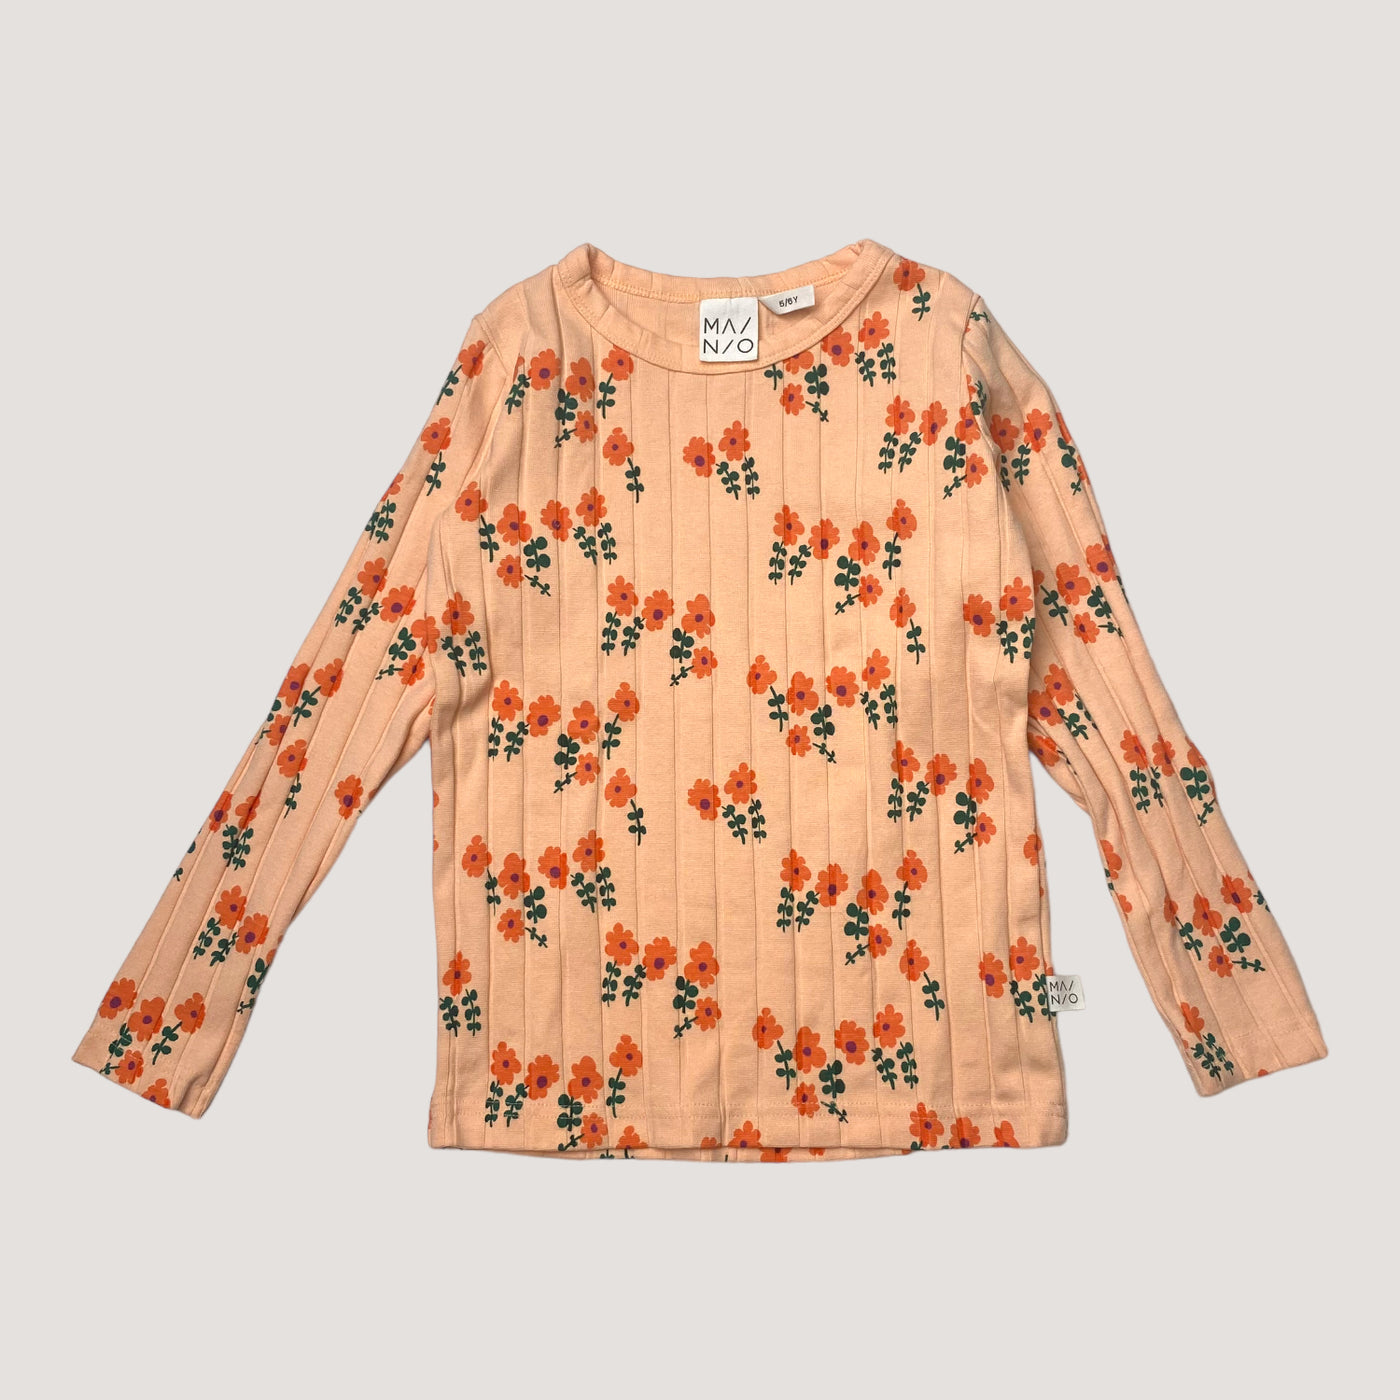 Mainio shirt, flowers | 110/116cm